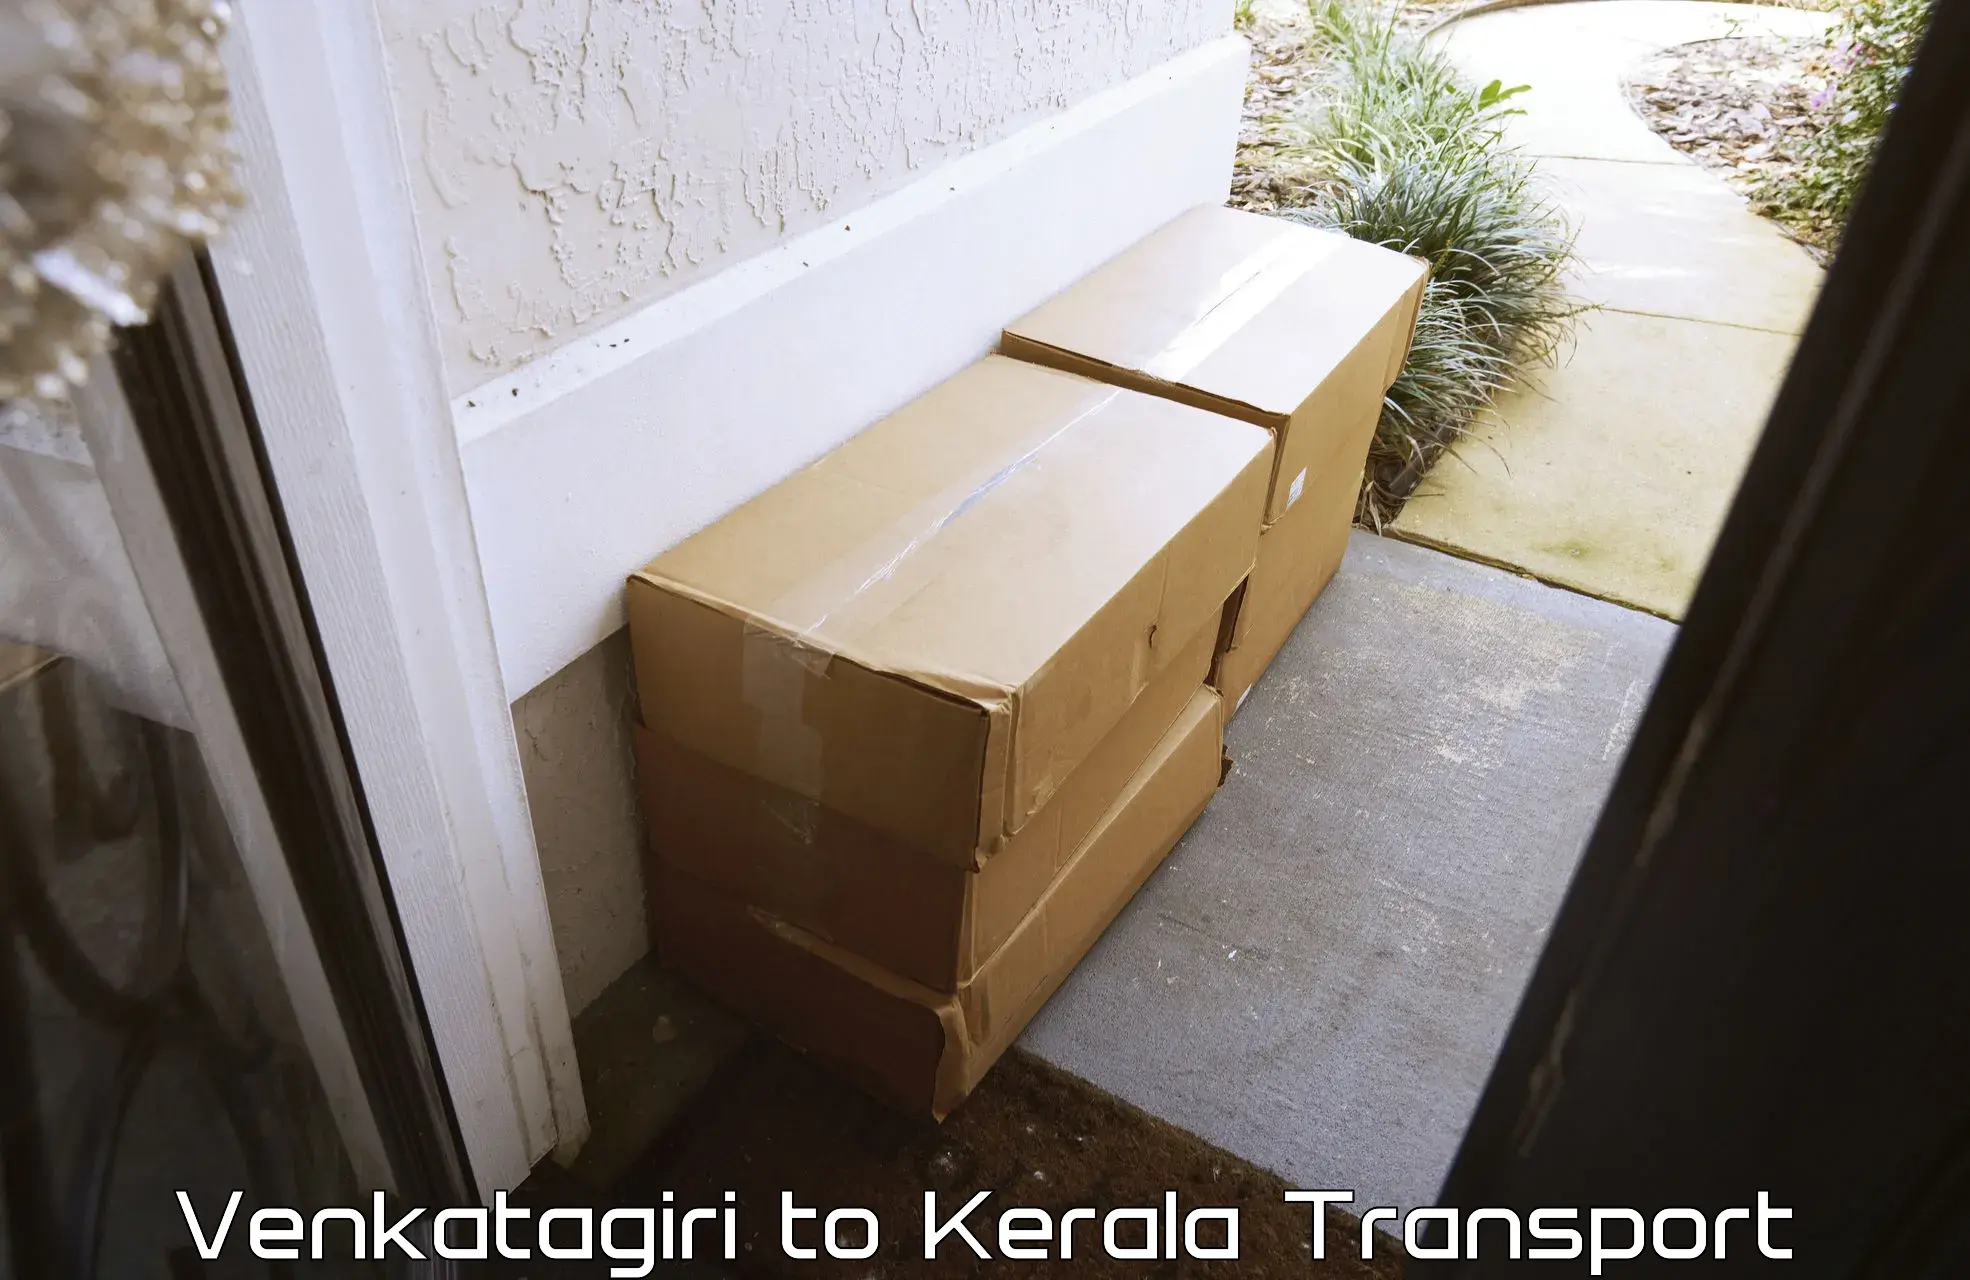 Daily parcel service transport in Venkatagiri to Perambra